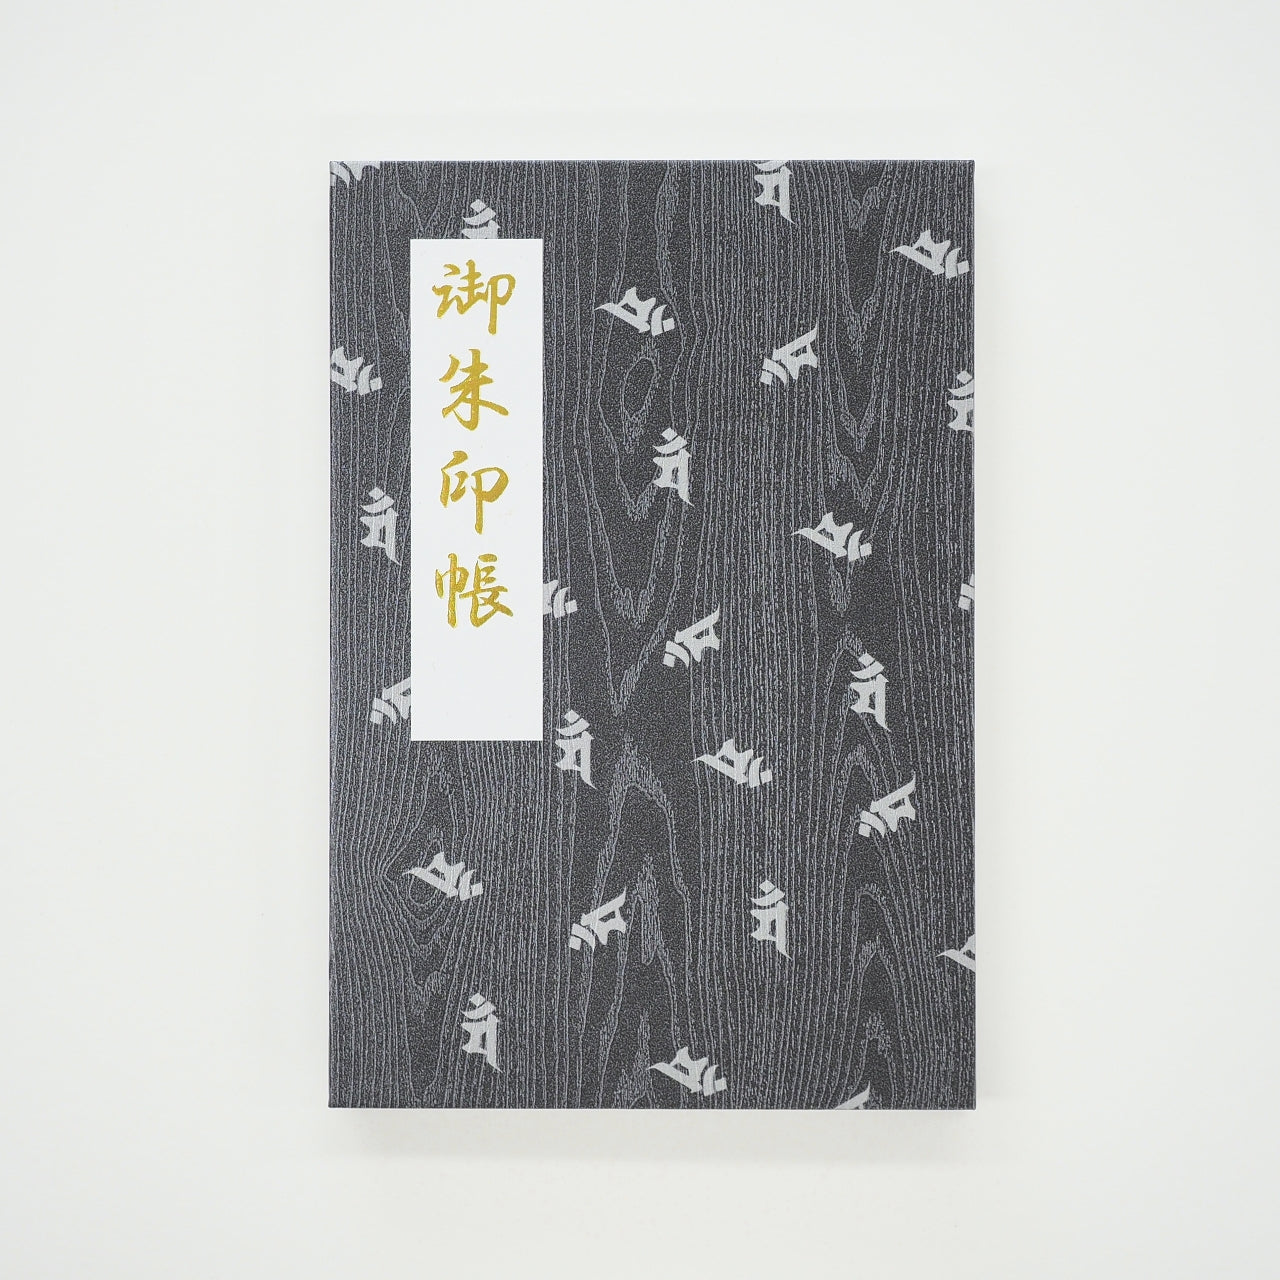 Goshuin book “Rinzen” flyer with Sanskrit characters and Manjushri Bodhisattva